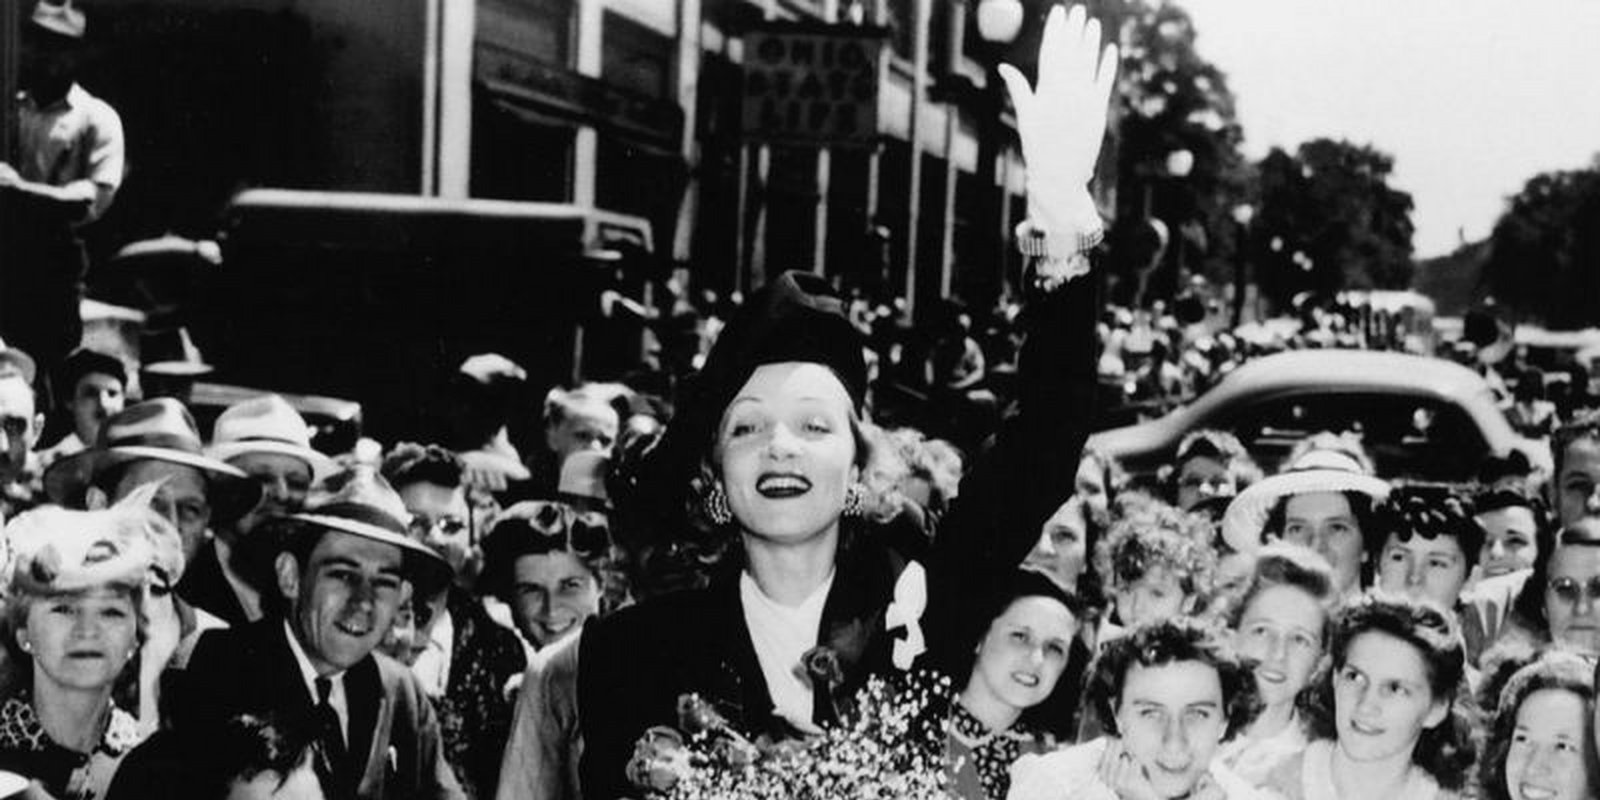 Marlene Dietrich - Her Own Song